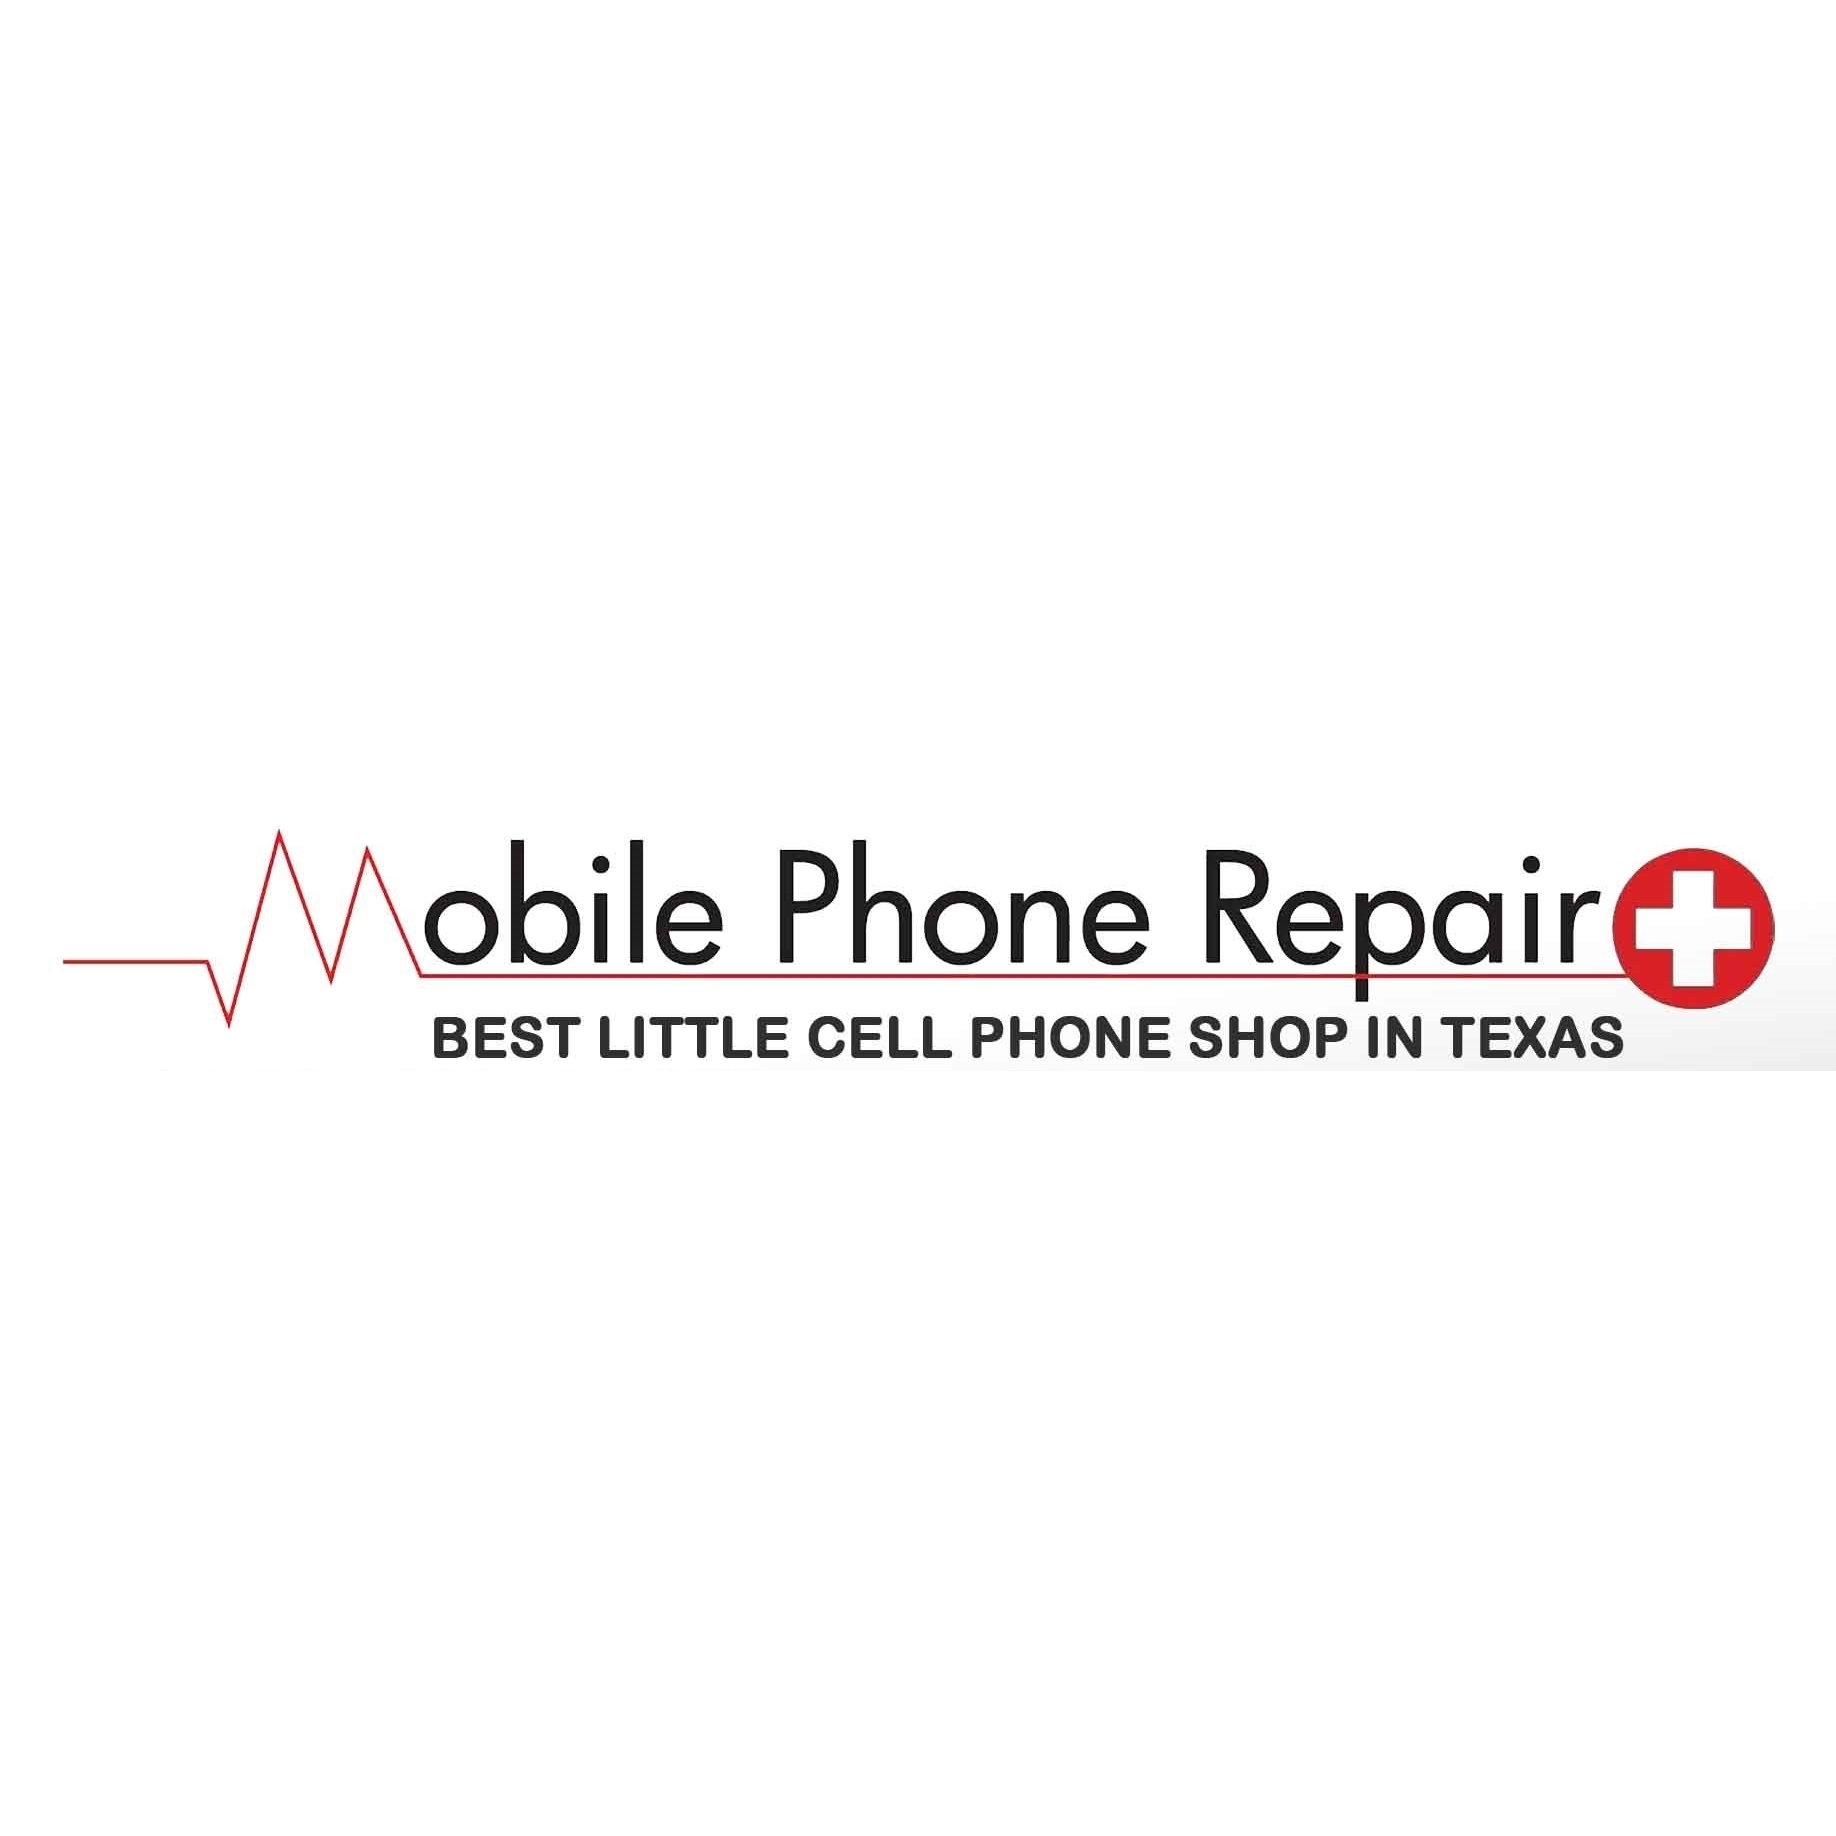 Mobile Phone Repair Plus Logo